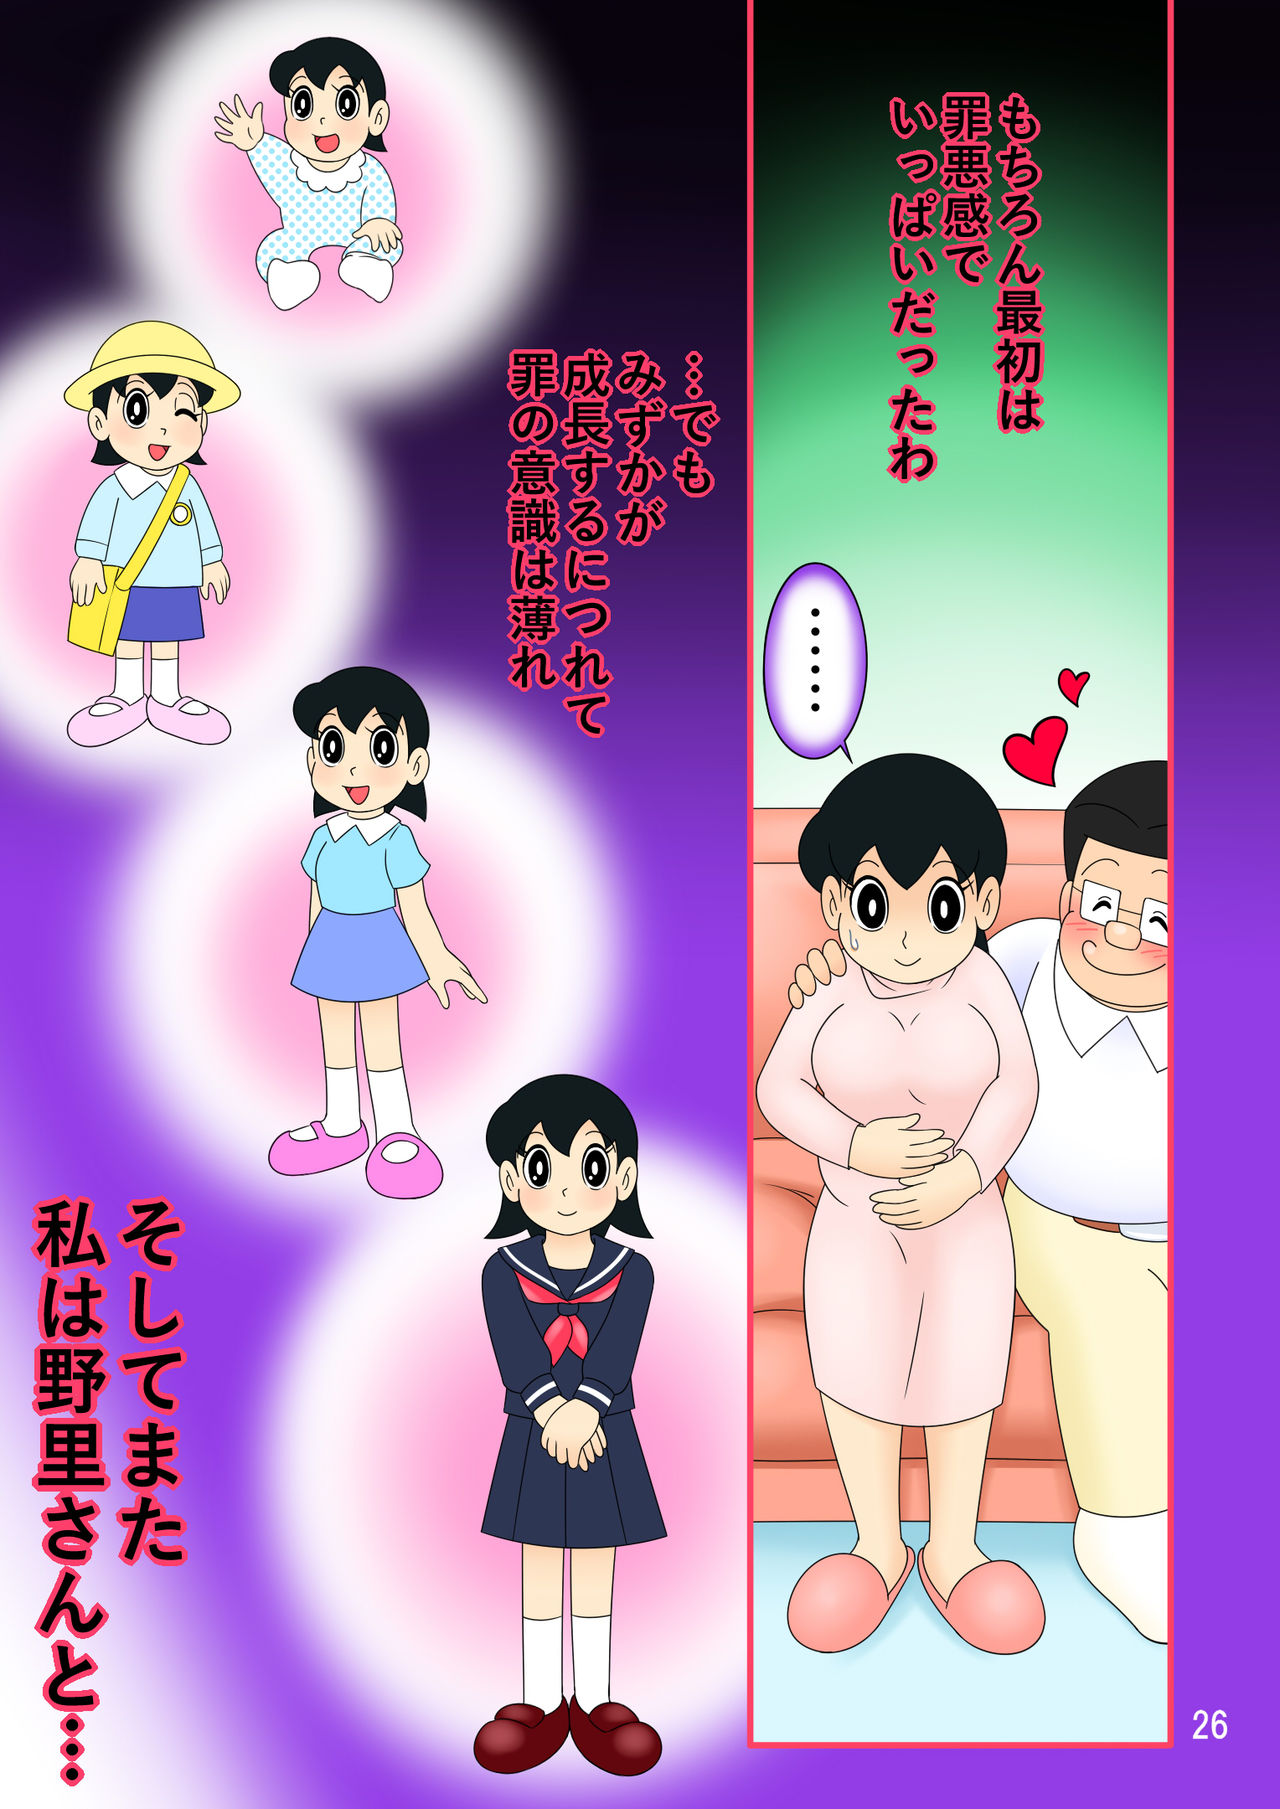 (Ho kuchi☆nanatsuboshi-chū) Yokubō kaihō taimu mashin aratame [mizu ka mama-hen] kako kaihen! Furin taku tamago& oyako dōji-ko-tsukuri (Doraemon) page 26 full